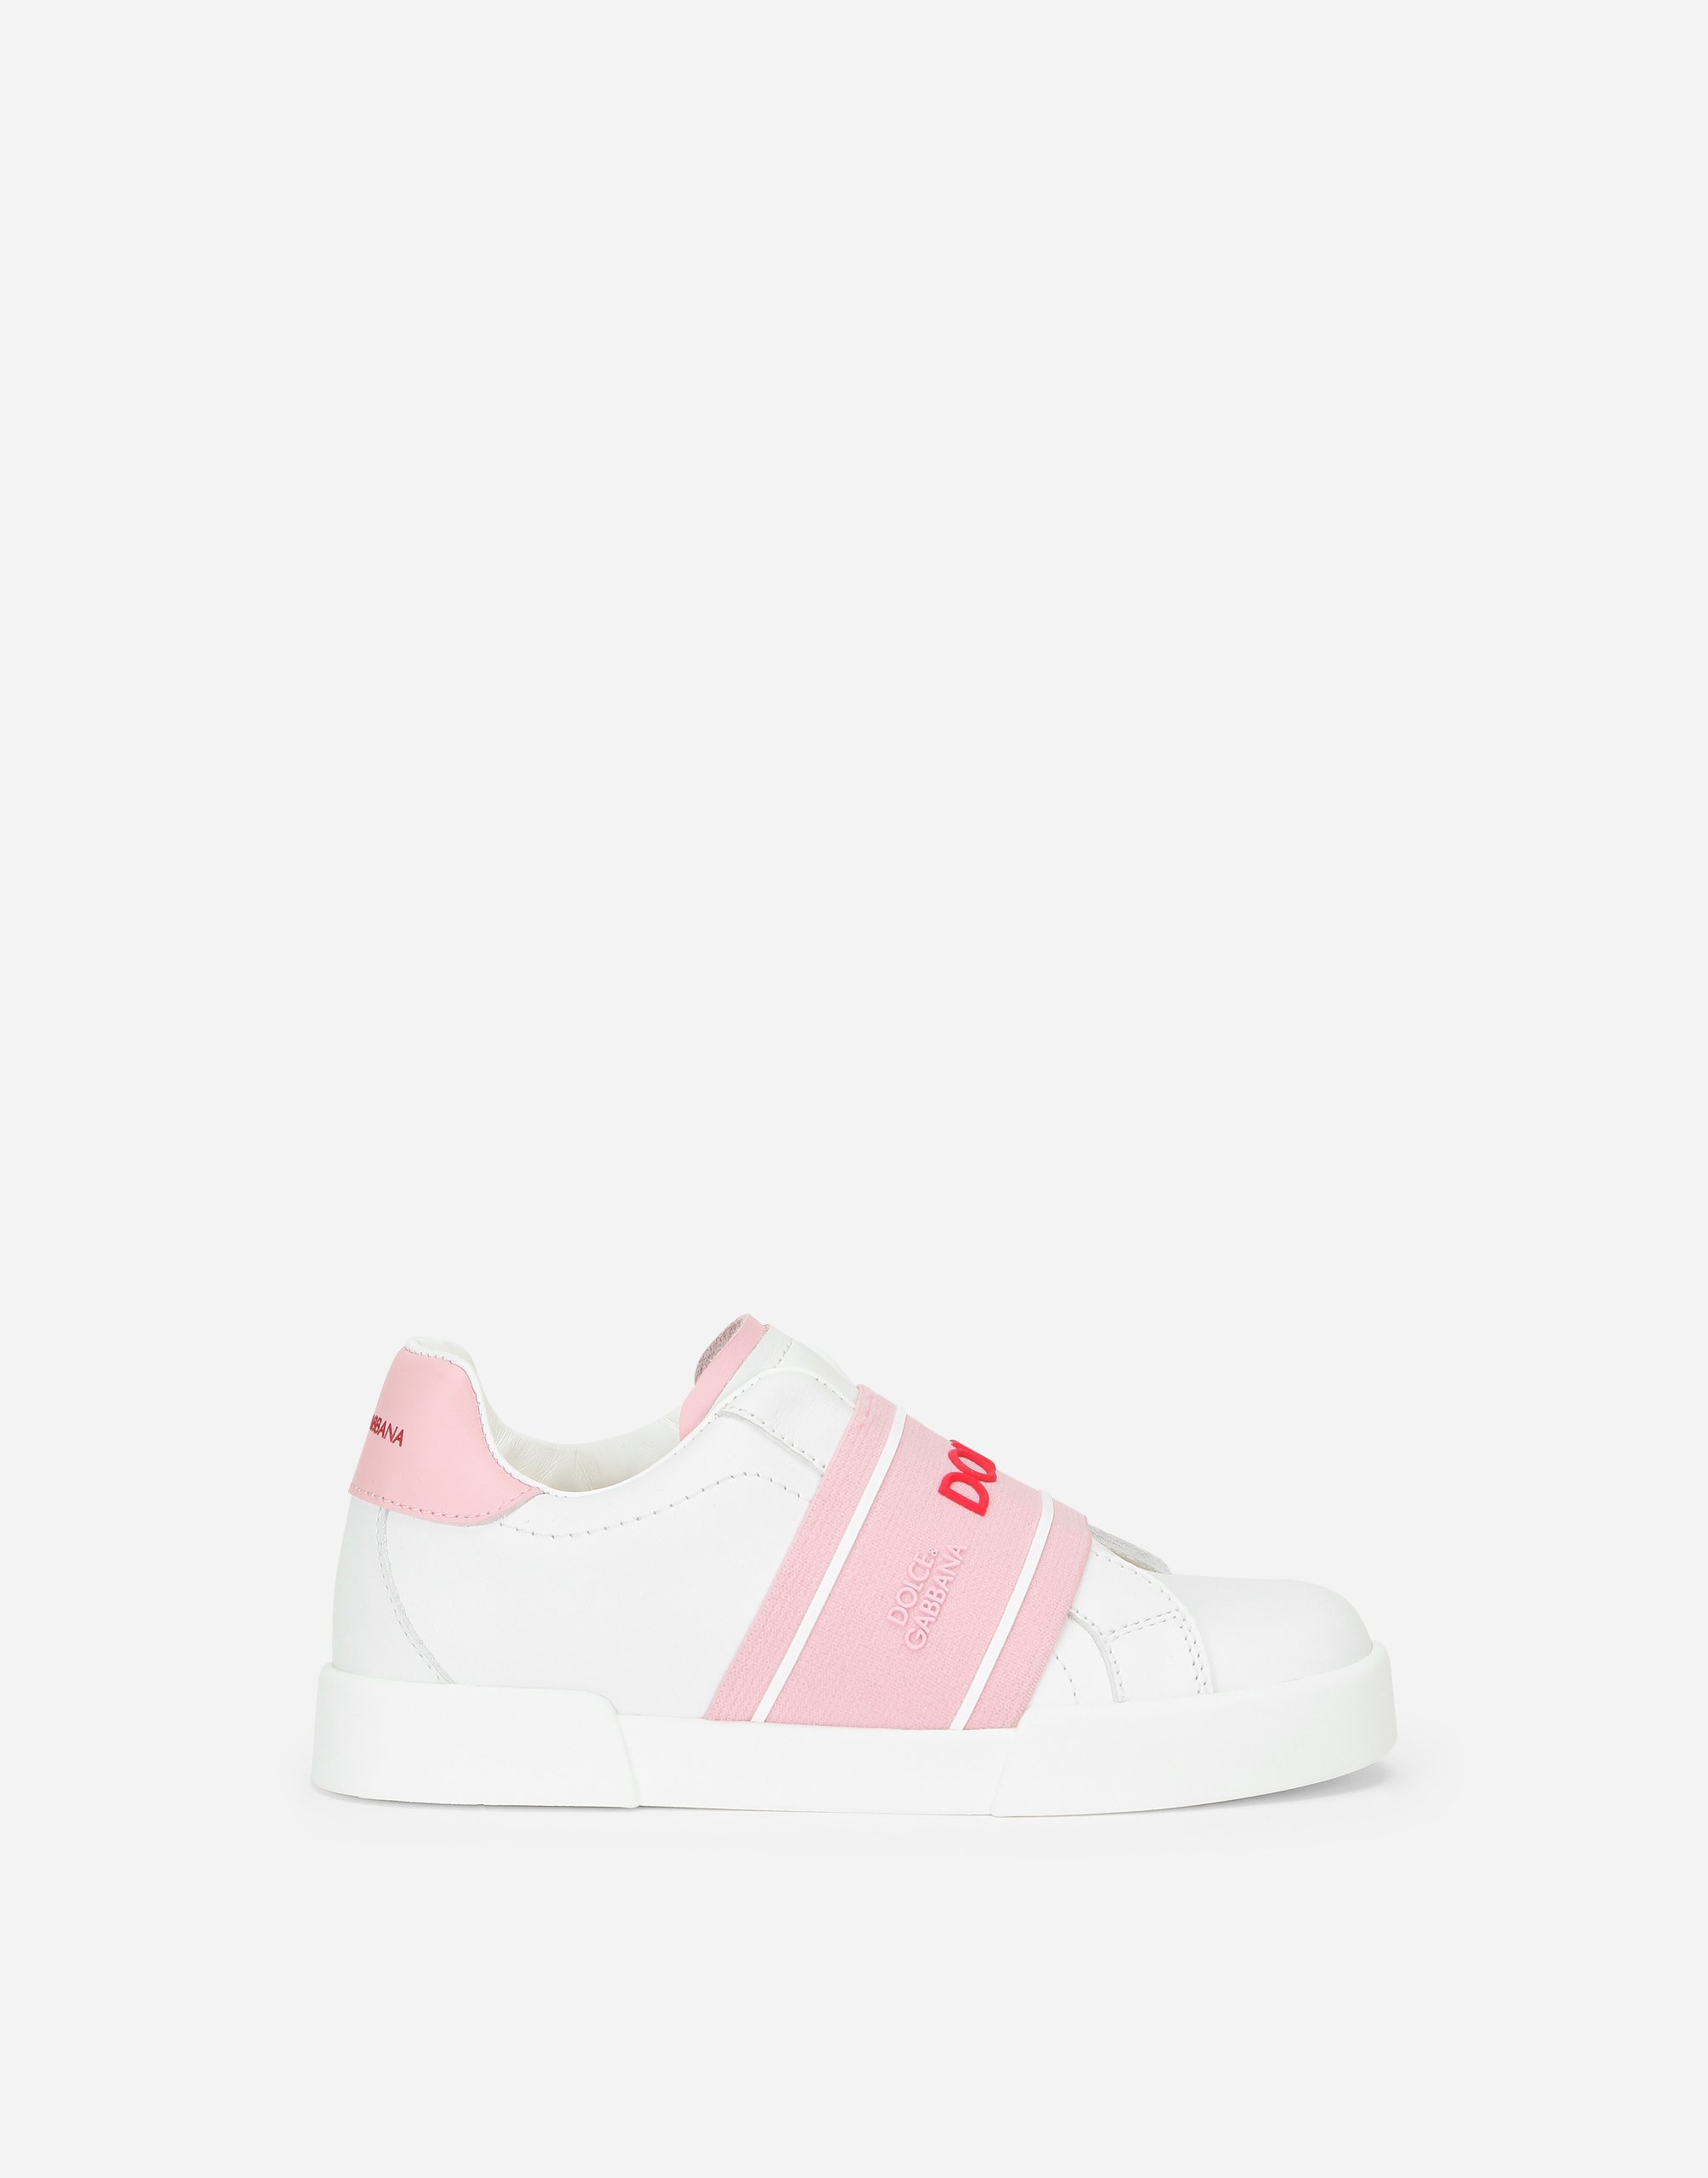 Calfskin slip-on Portofino light sneakers in White/Pink